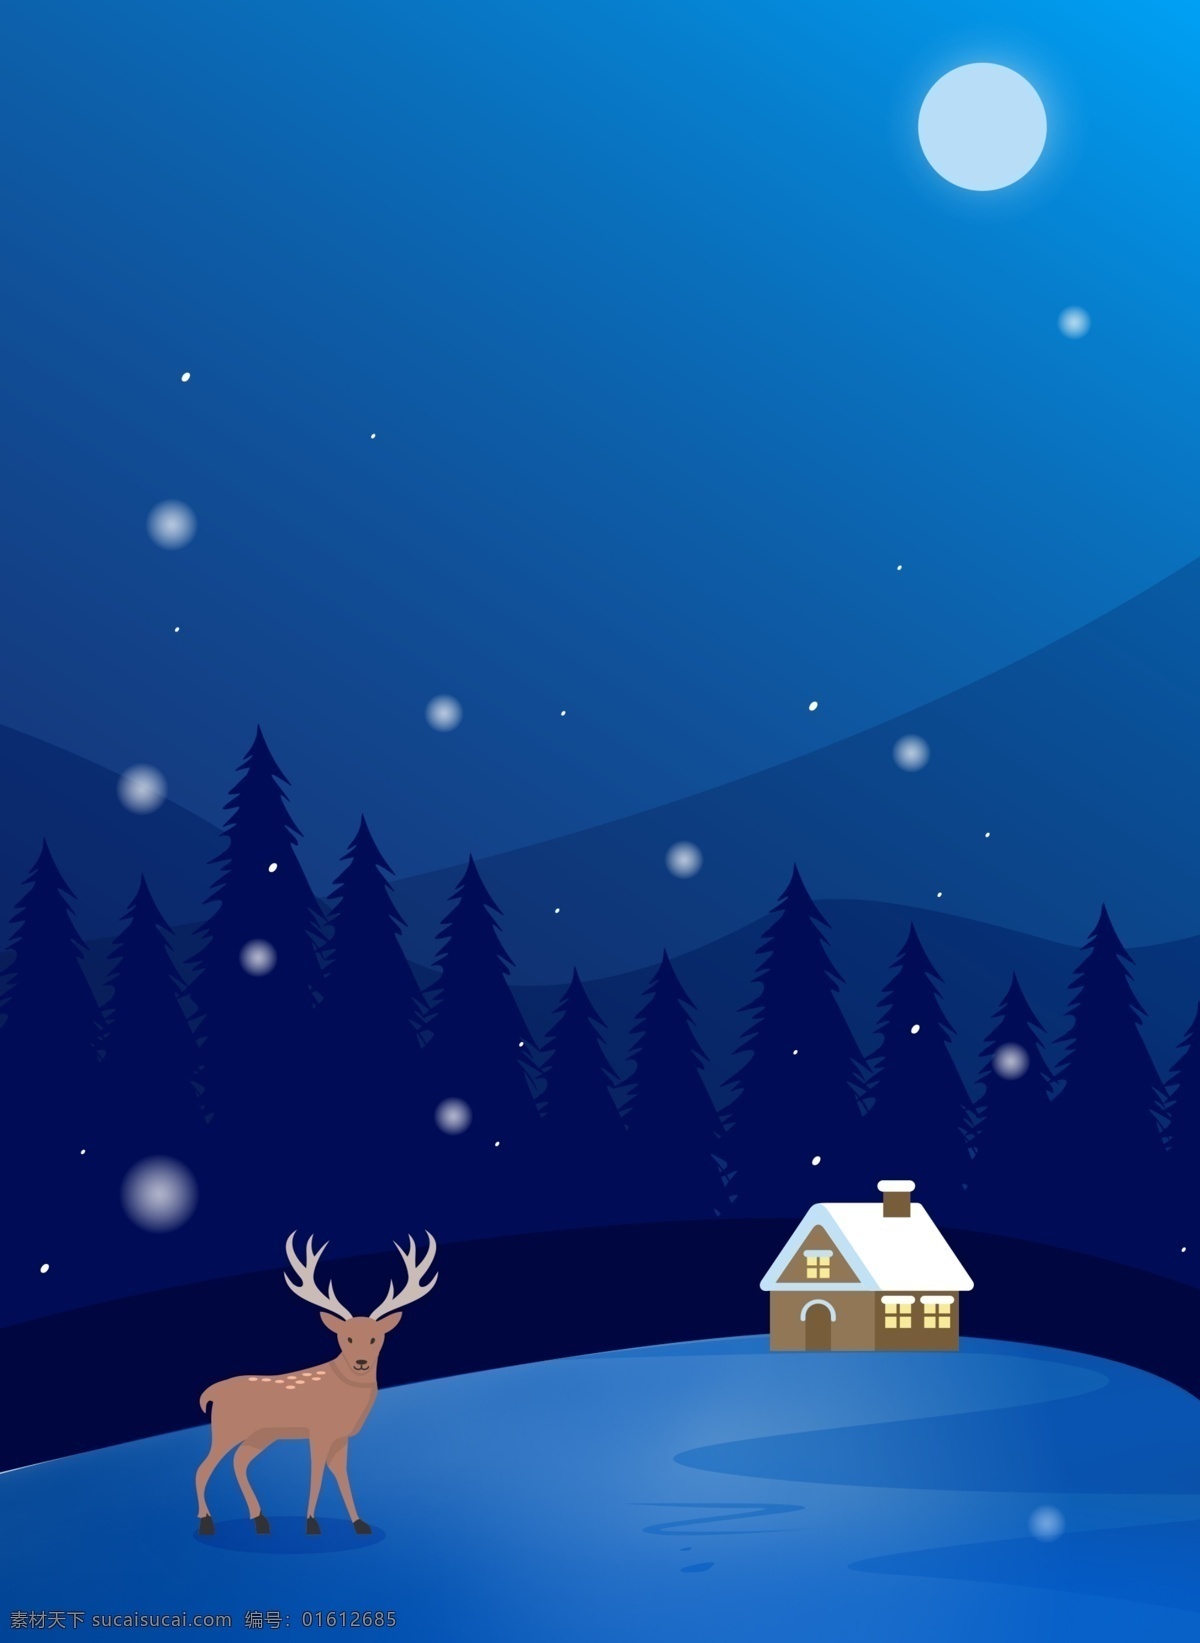 蓝色 卡 通风 树林 雪景 背景 下雪 冬天 冬至节气 传统节气 24节气冬天 冬至背景图 房屋